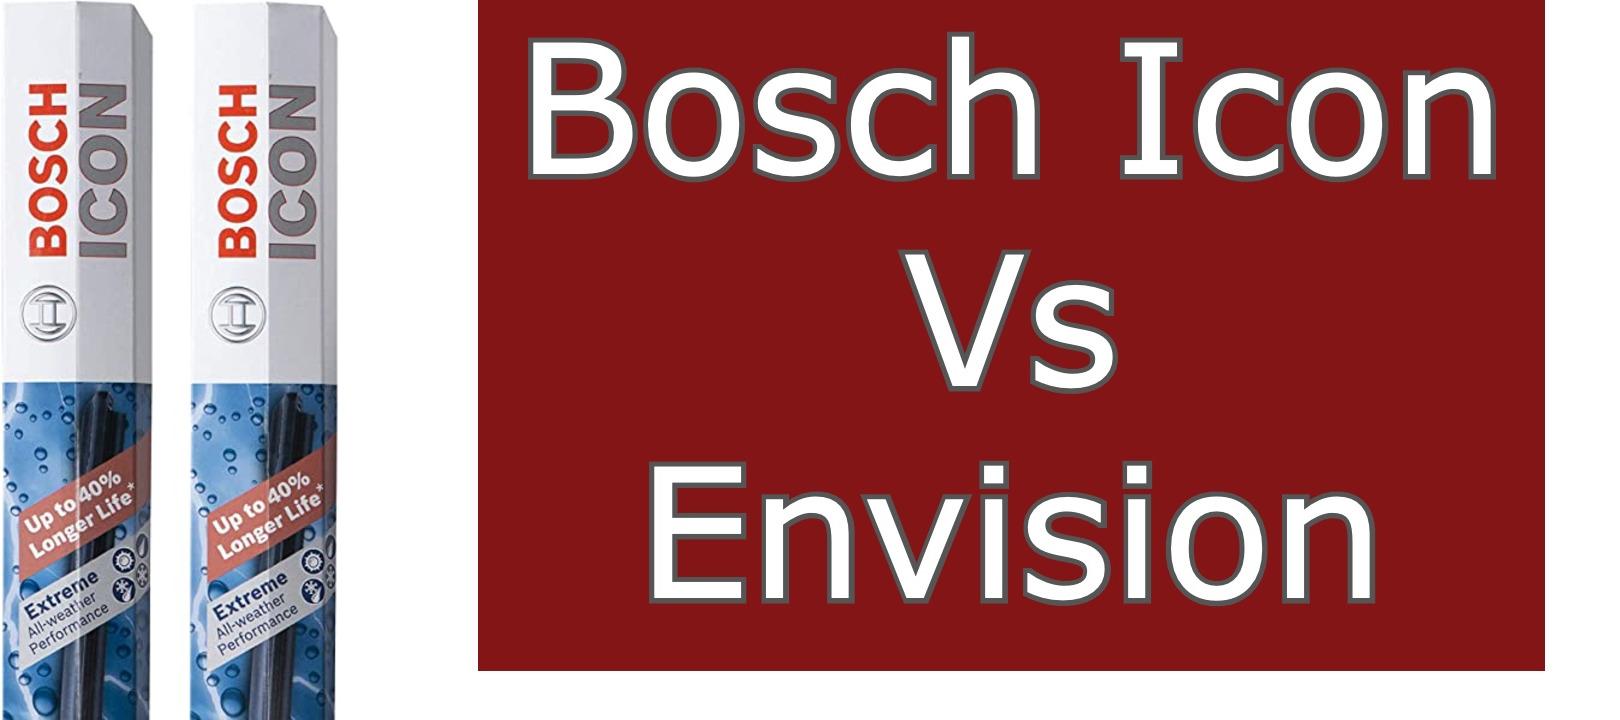 Bosch Icon Vs Envision